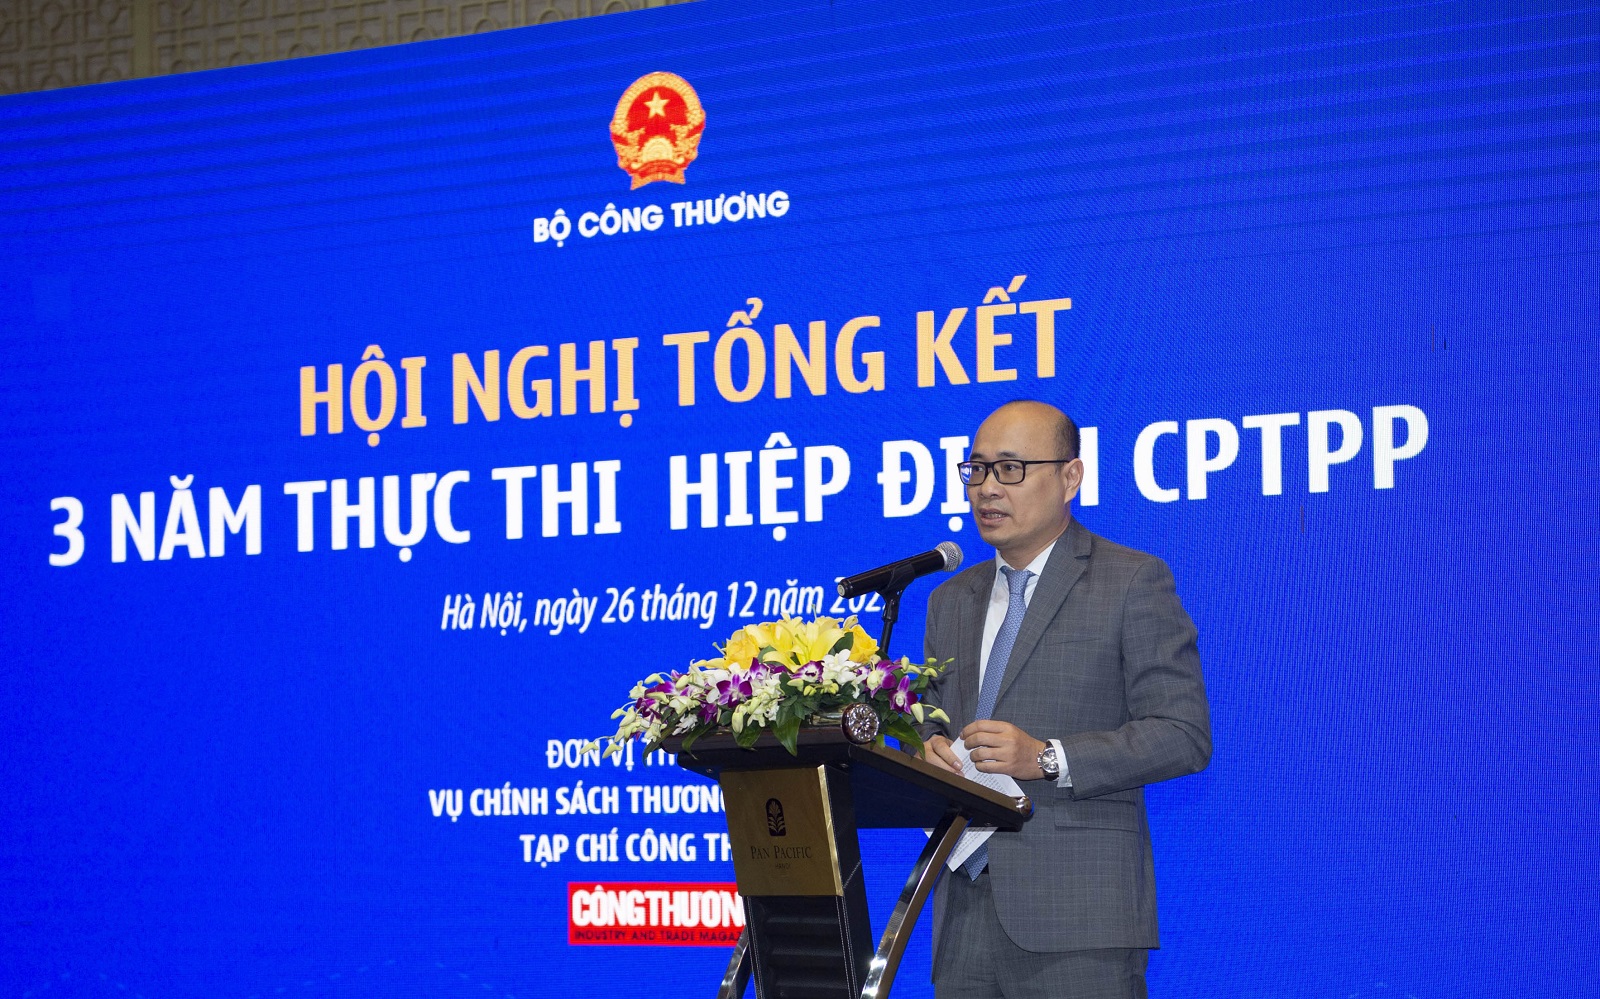 Theo ông Thái, ngày càng có nhiều quốc gia xin gia nhập Hiệp định CPTPP.